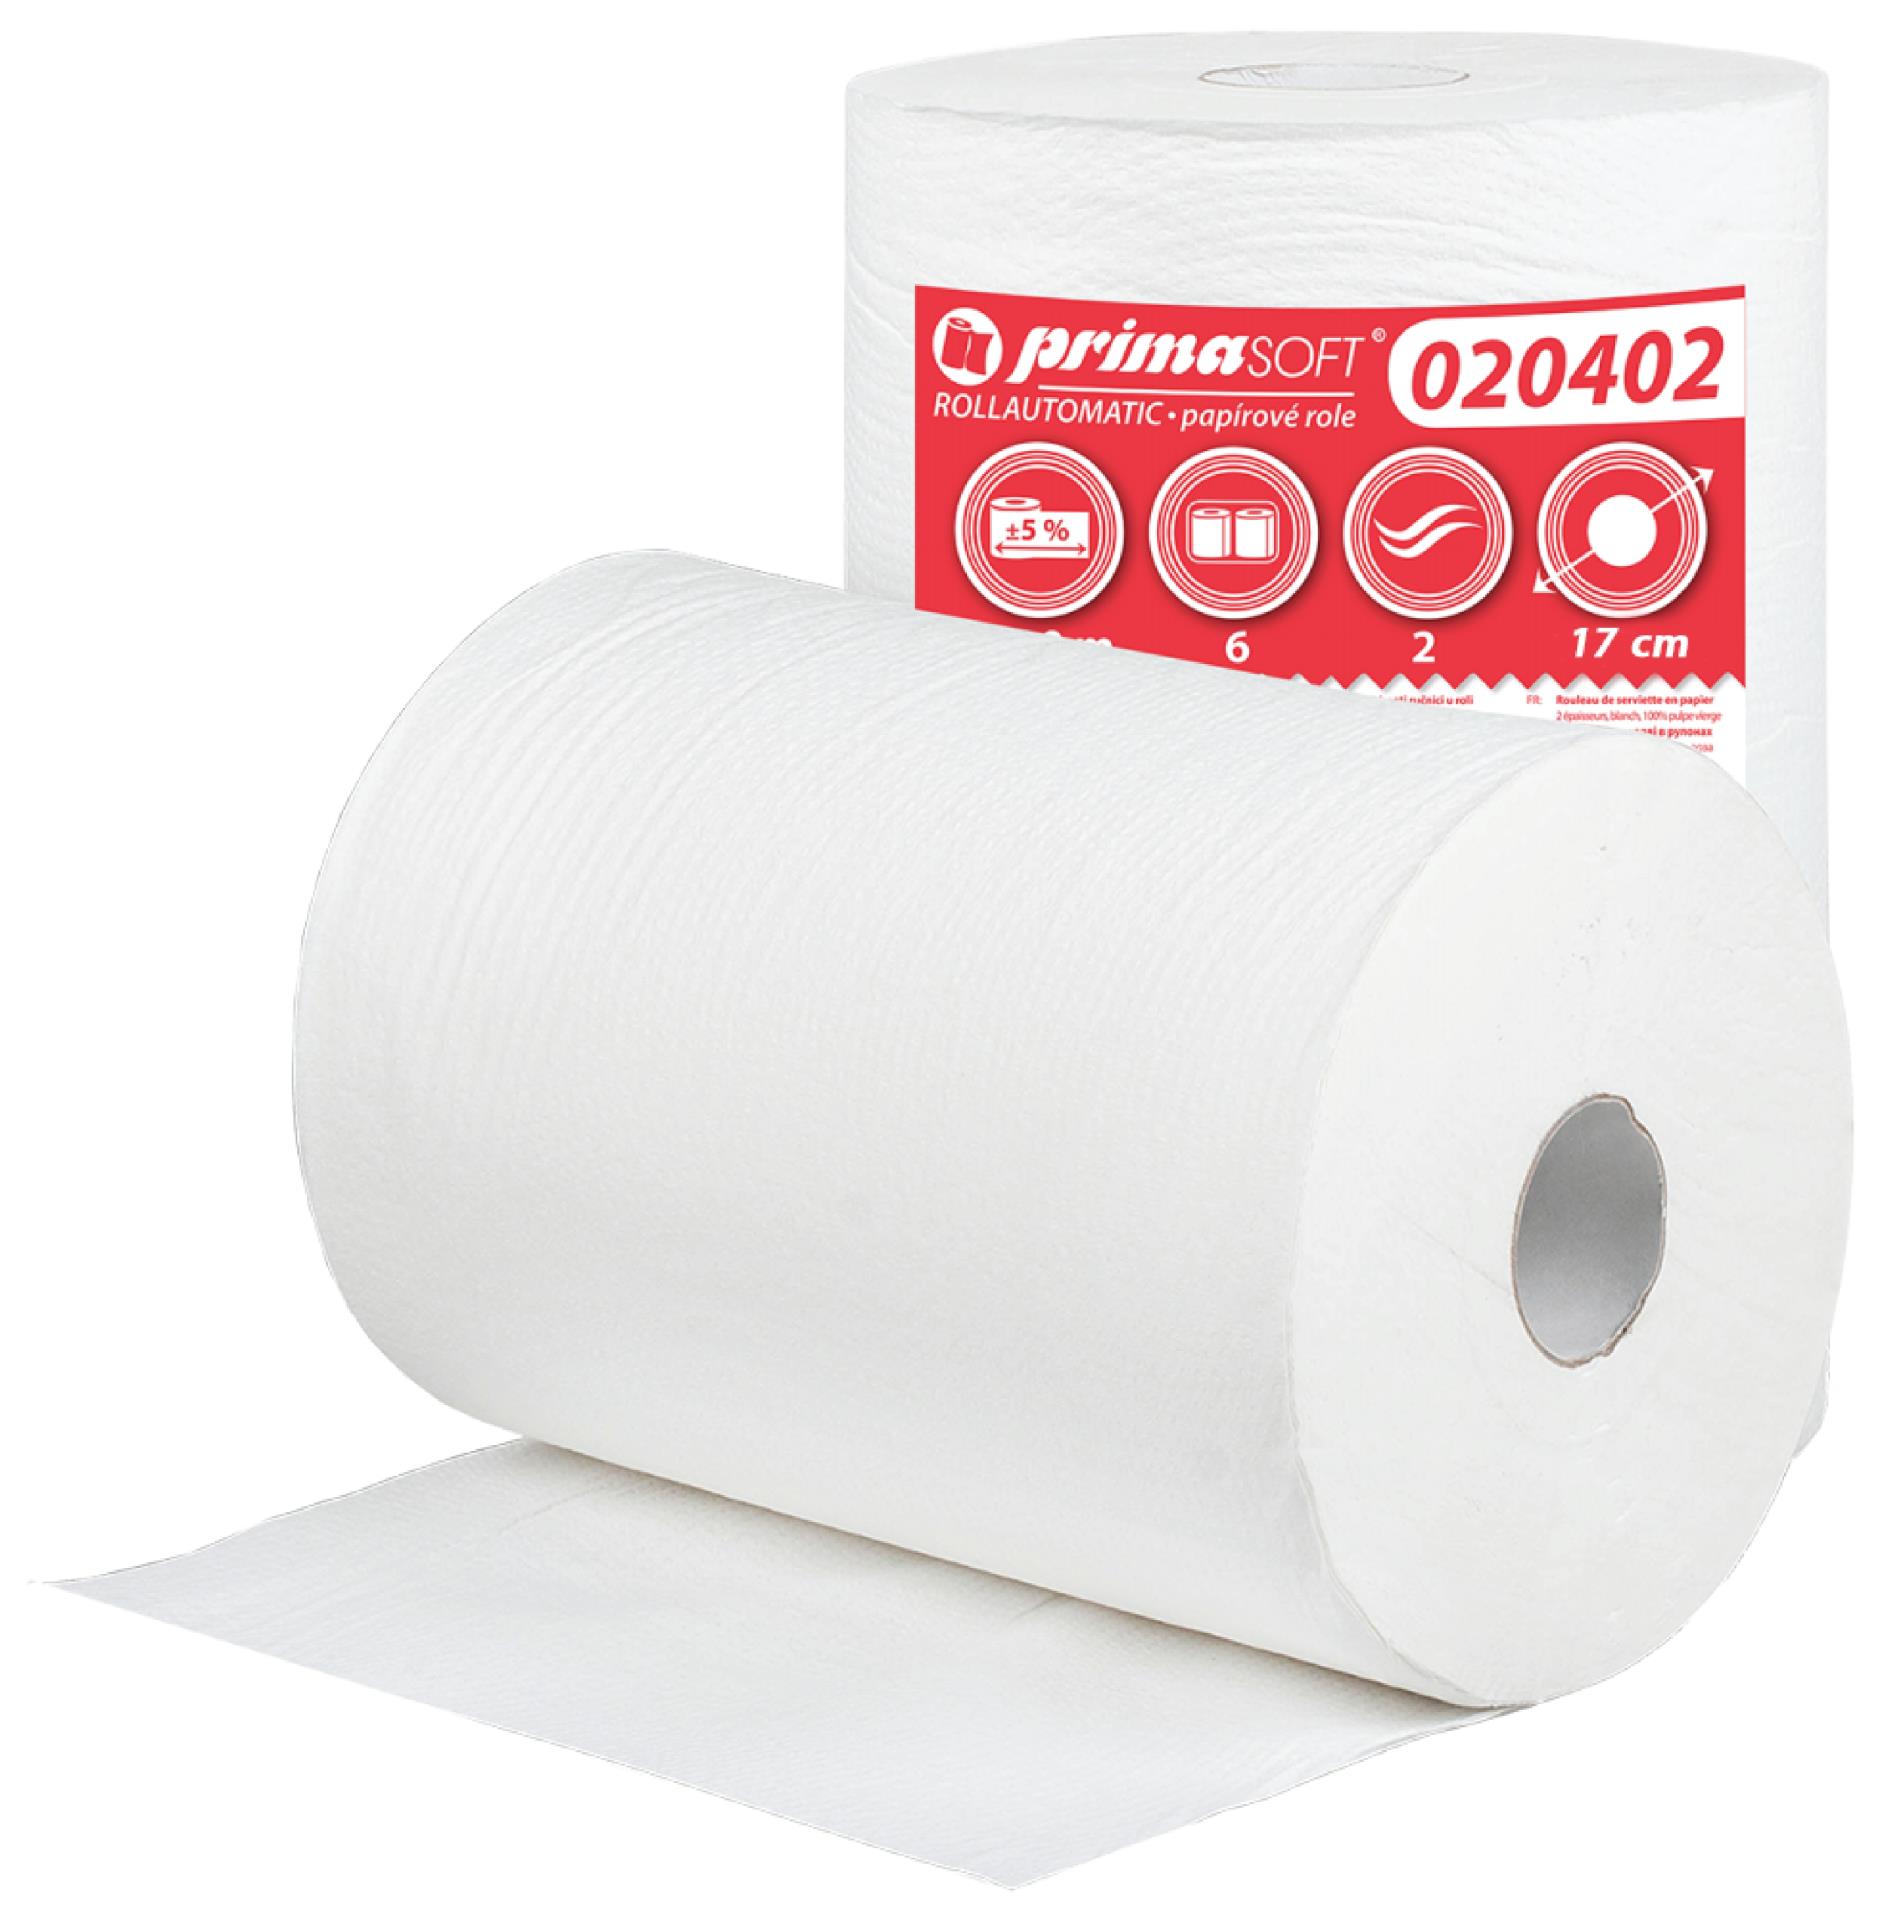 Papírové ručníky v roli Primasoft - 2vrstvé, rollautomatic, bílé, 150m